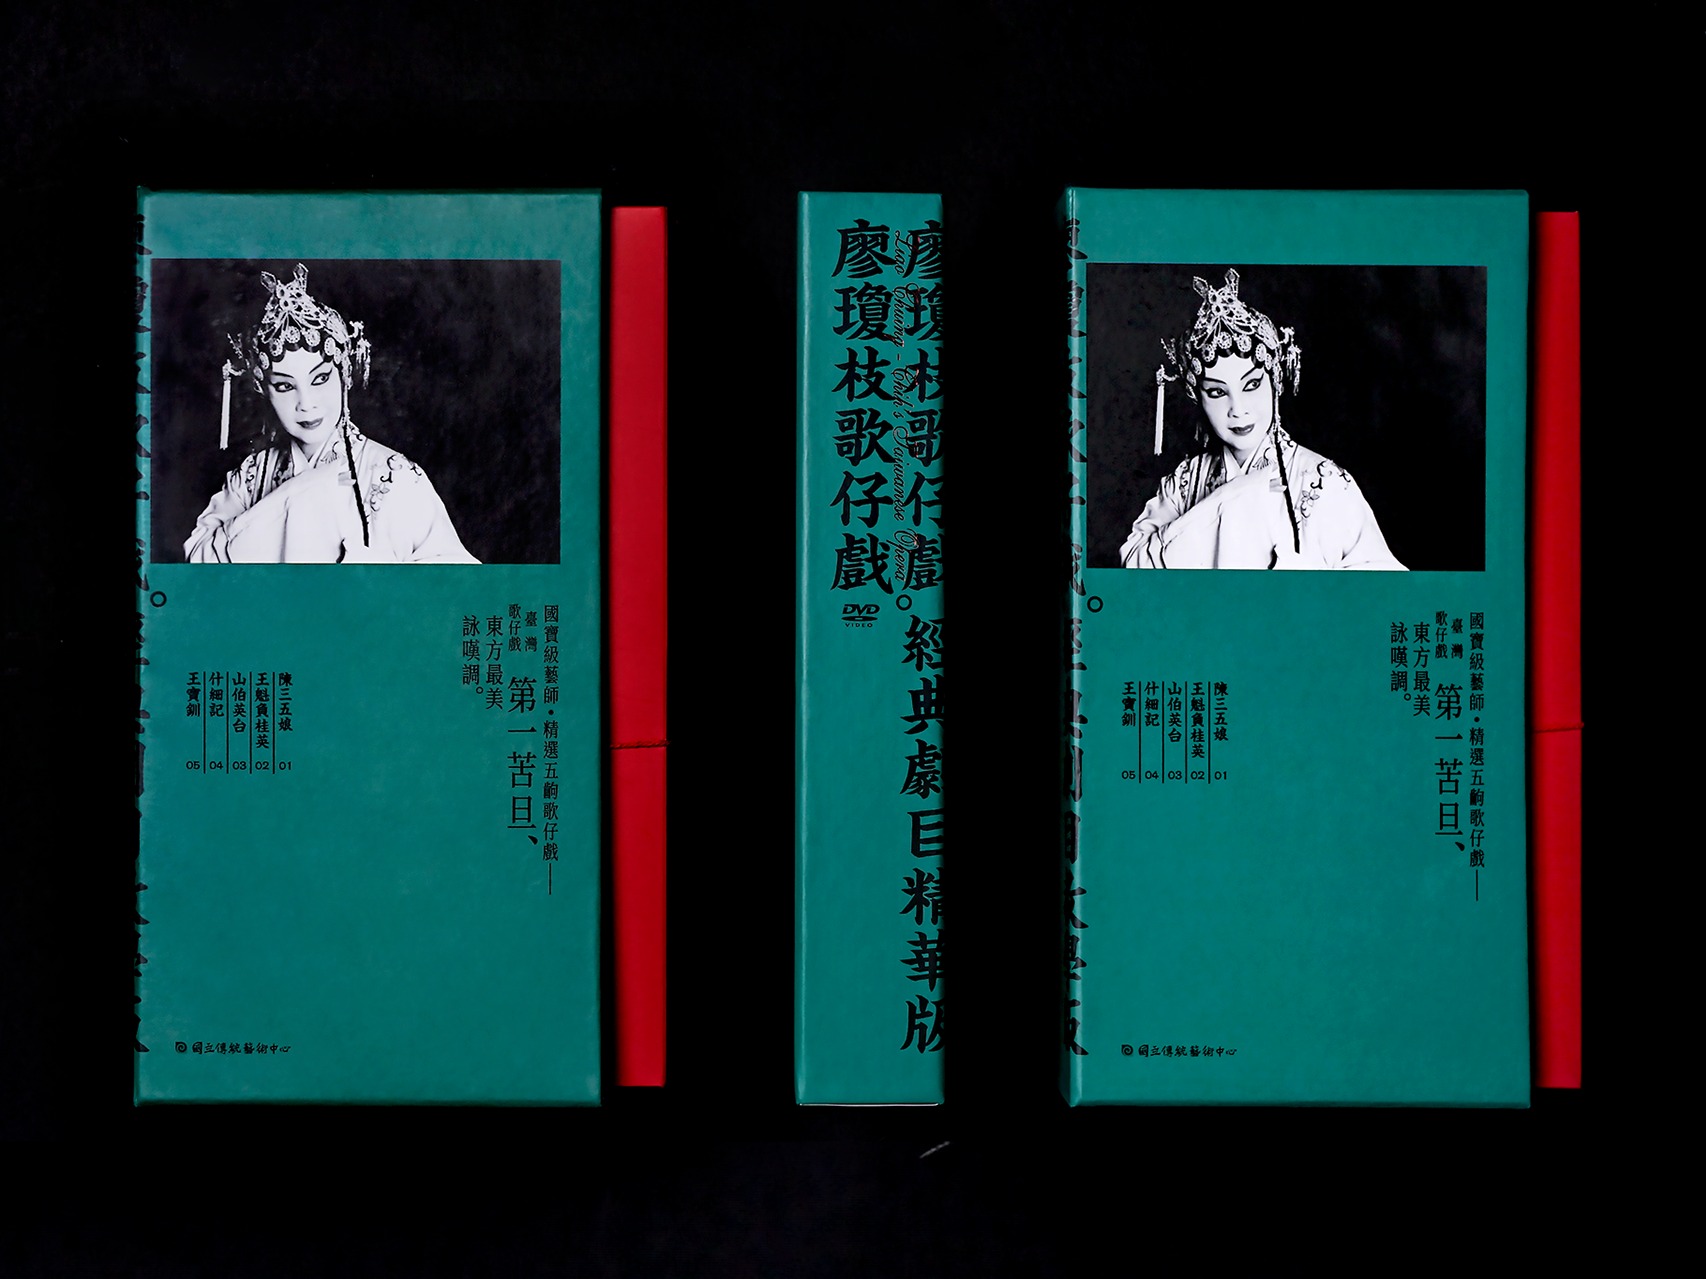 廖瓊枝歌仔戲專輯包裝裝幀 Liao Chiung-Chih